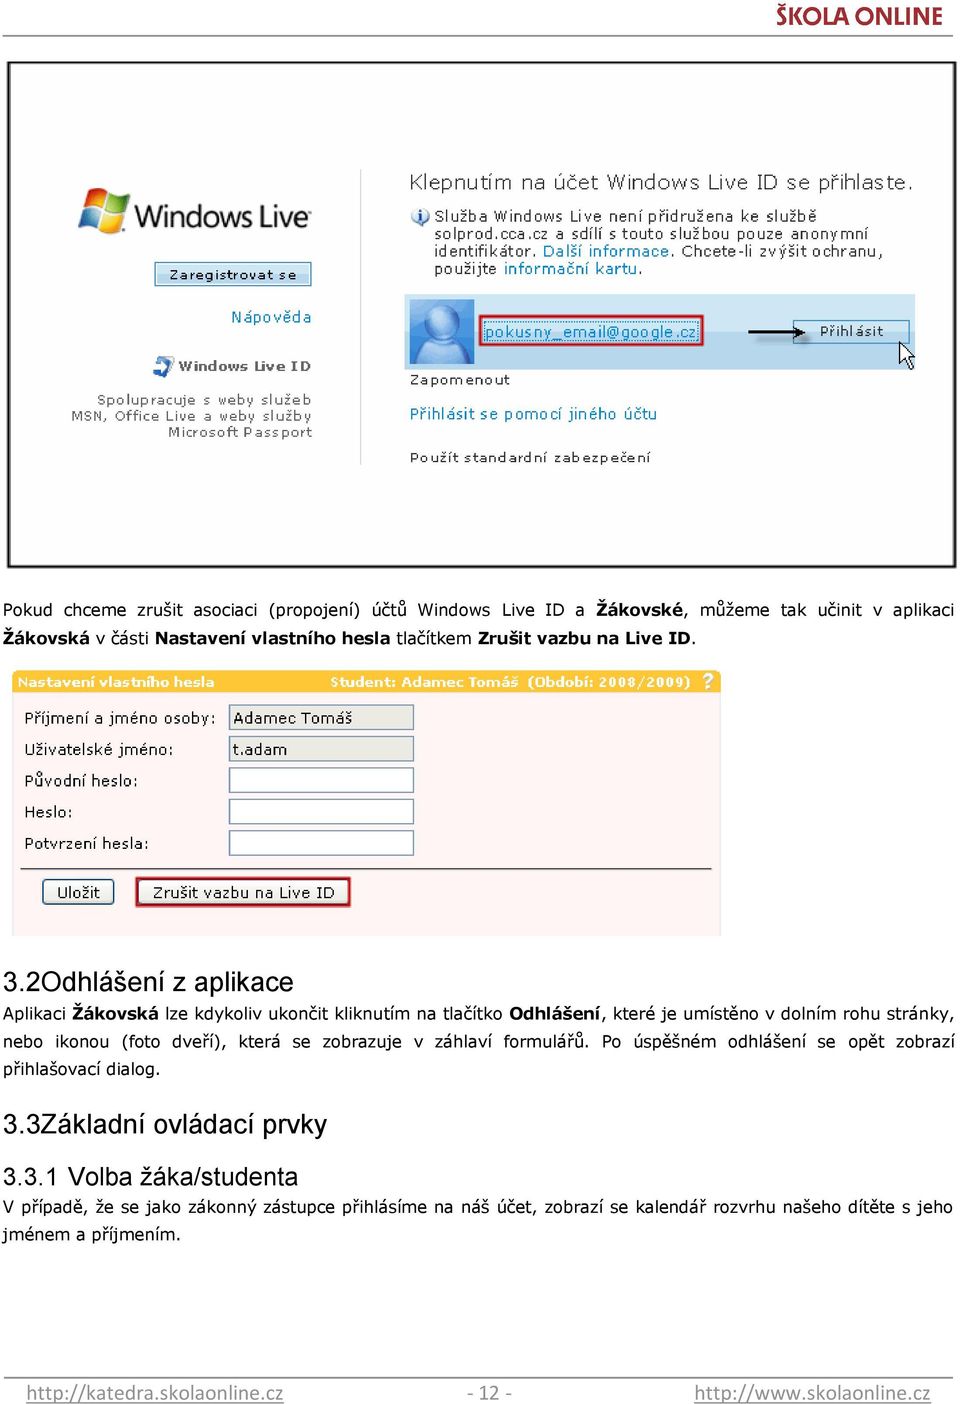 2Odhlášení z aplikace Aplikaci Ţákovská lze kdykoliv ukončit kliknutím na tlačítko Odhlášení, které je umístěno v dolním rohu stránky, nebo ikonou (foto dveří), která se